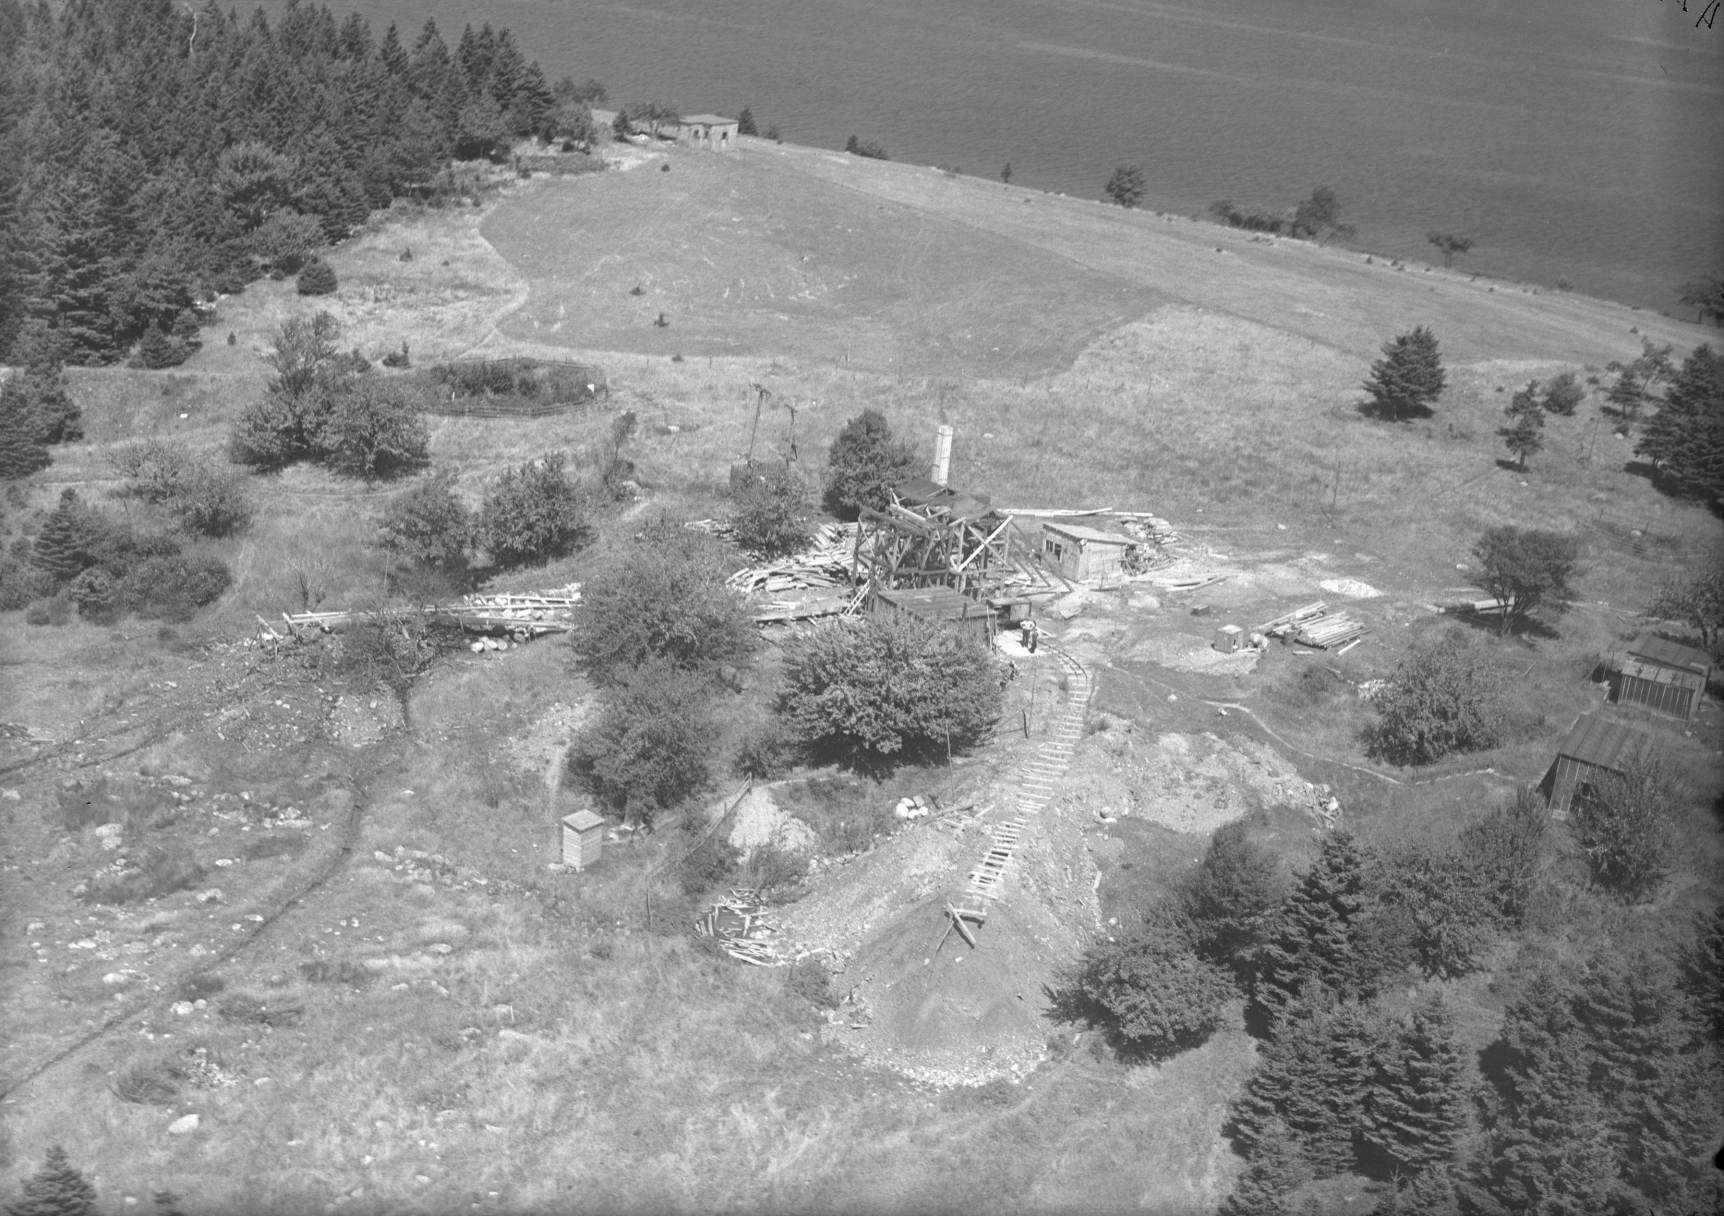 Fotografie byla pořízena v srpnu 1931 na Oak Island v Novém Skotsku v Kanadě. Znázorňoval různé výkopy a stavby.